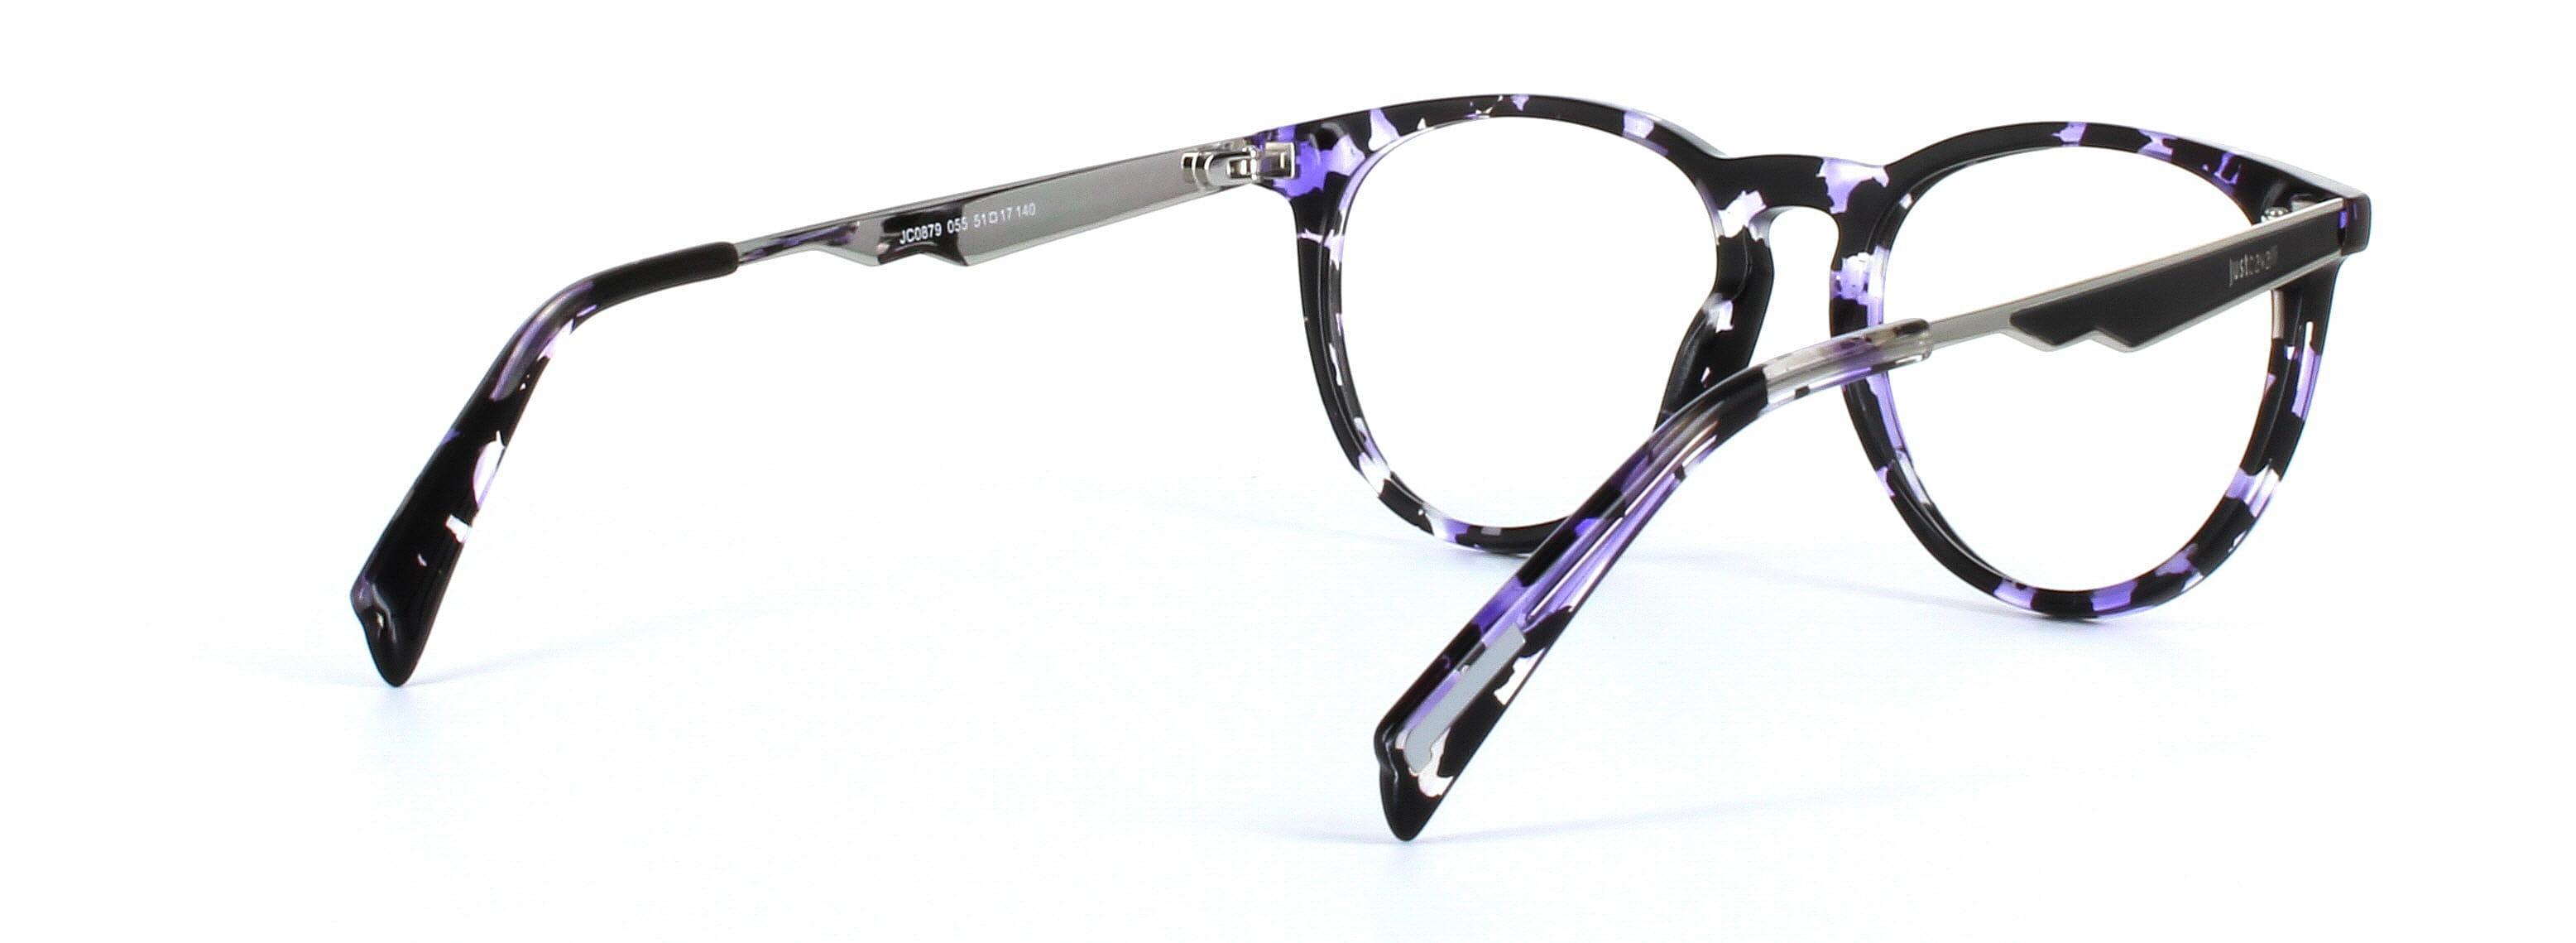 JUST CAVALLI (JC0879-055) Black and Purple Full Rim Round Acetate Glasses - Image View 4